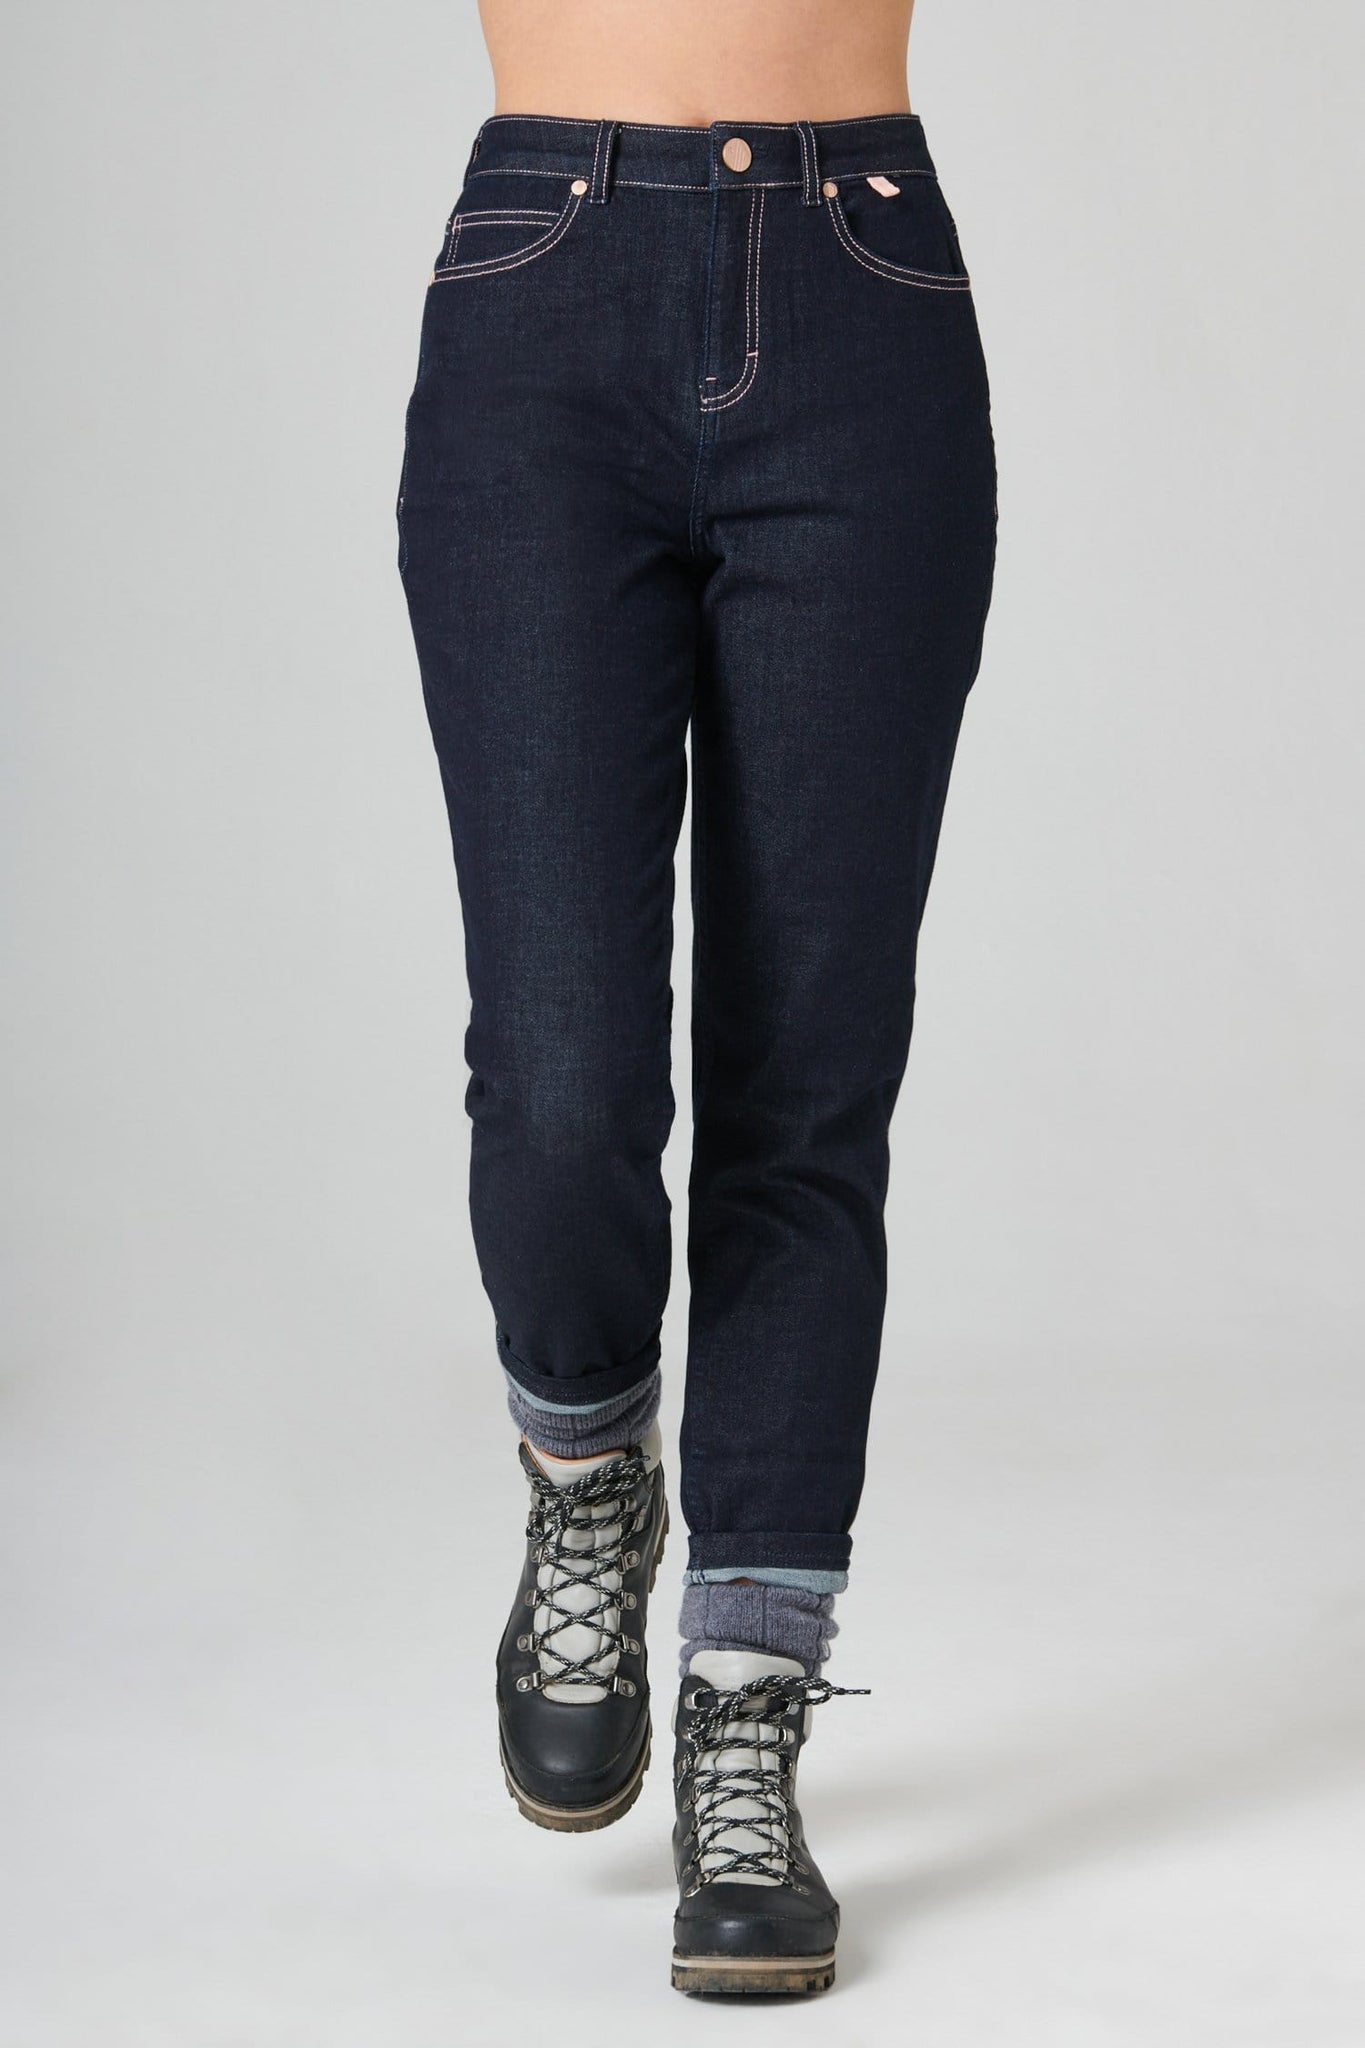 The Outdoor Slim Fit Jeans - Dark Blue Denim